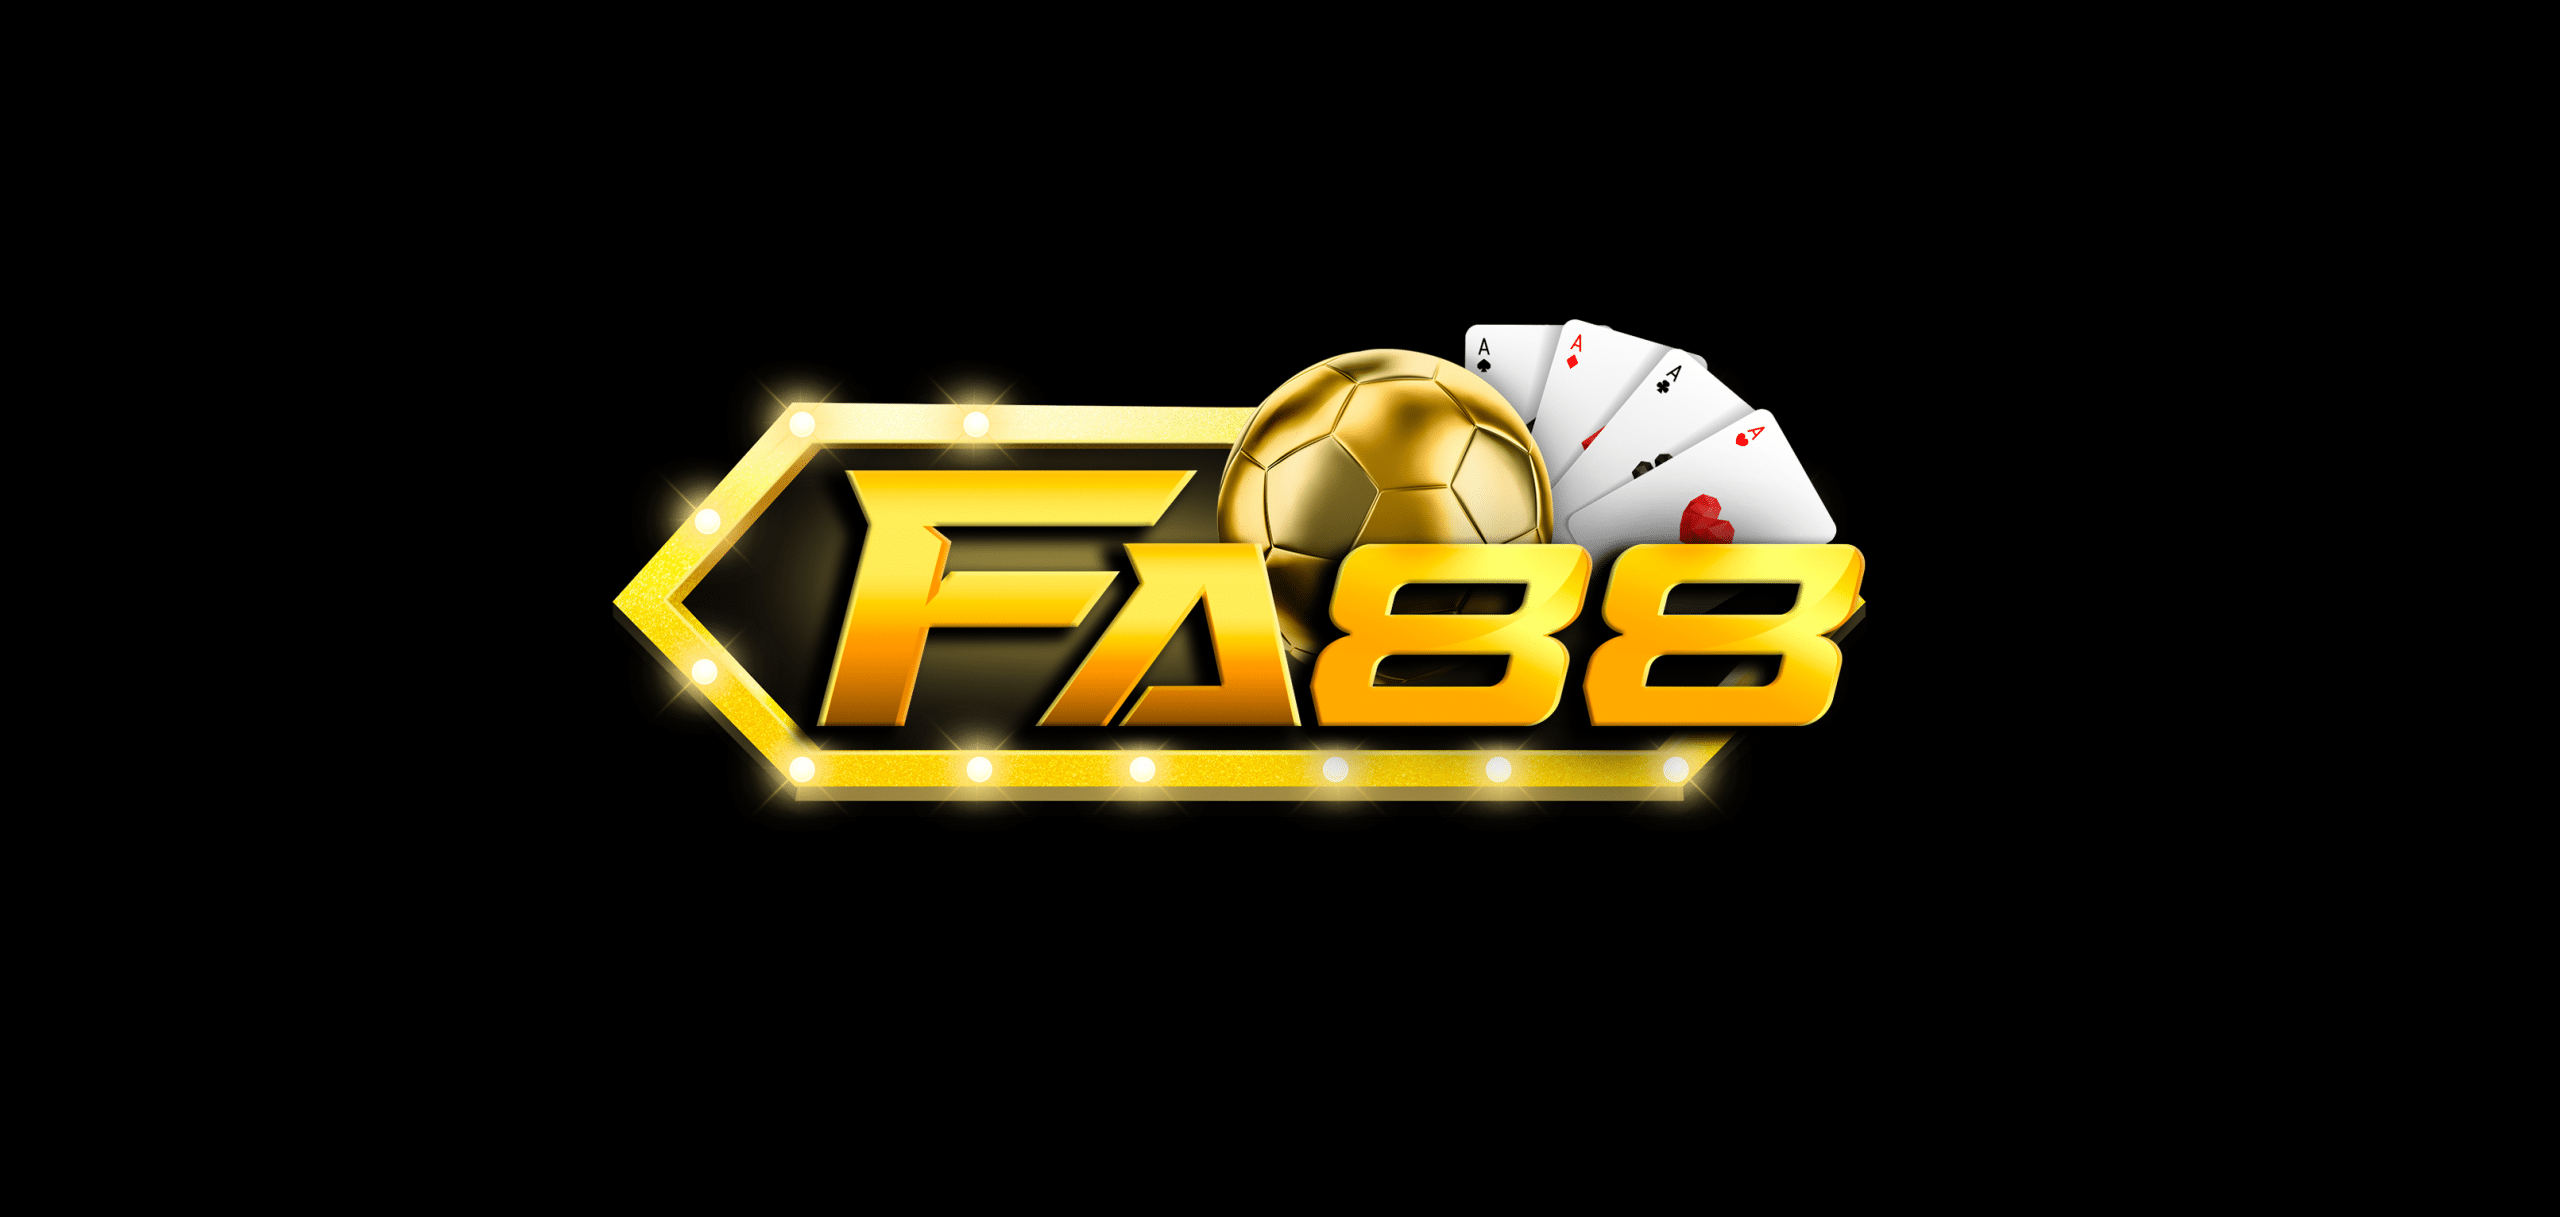 Fa88 chính thức thành lập lần đầu vào năm 2016